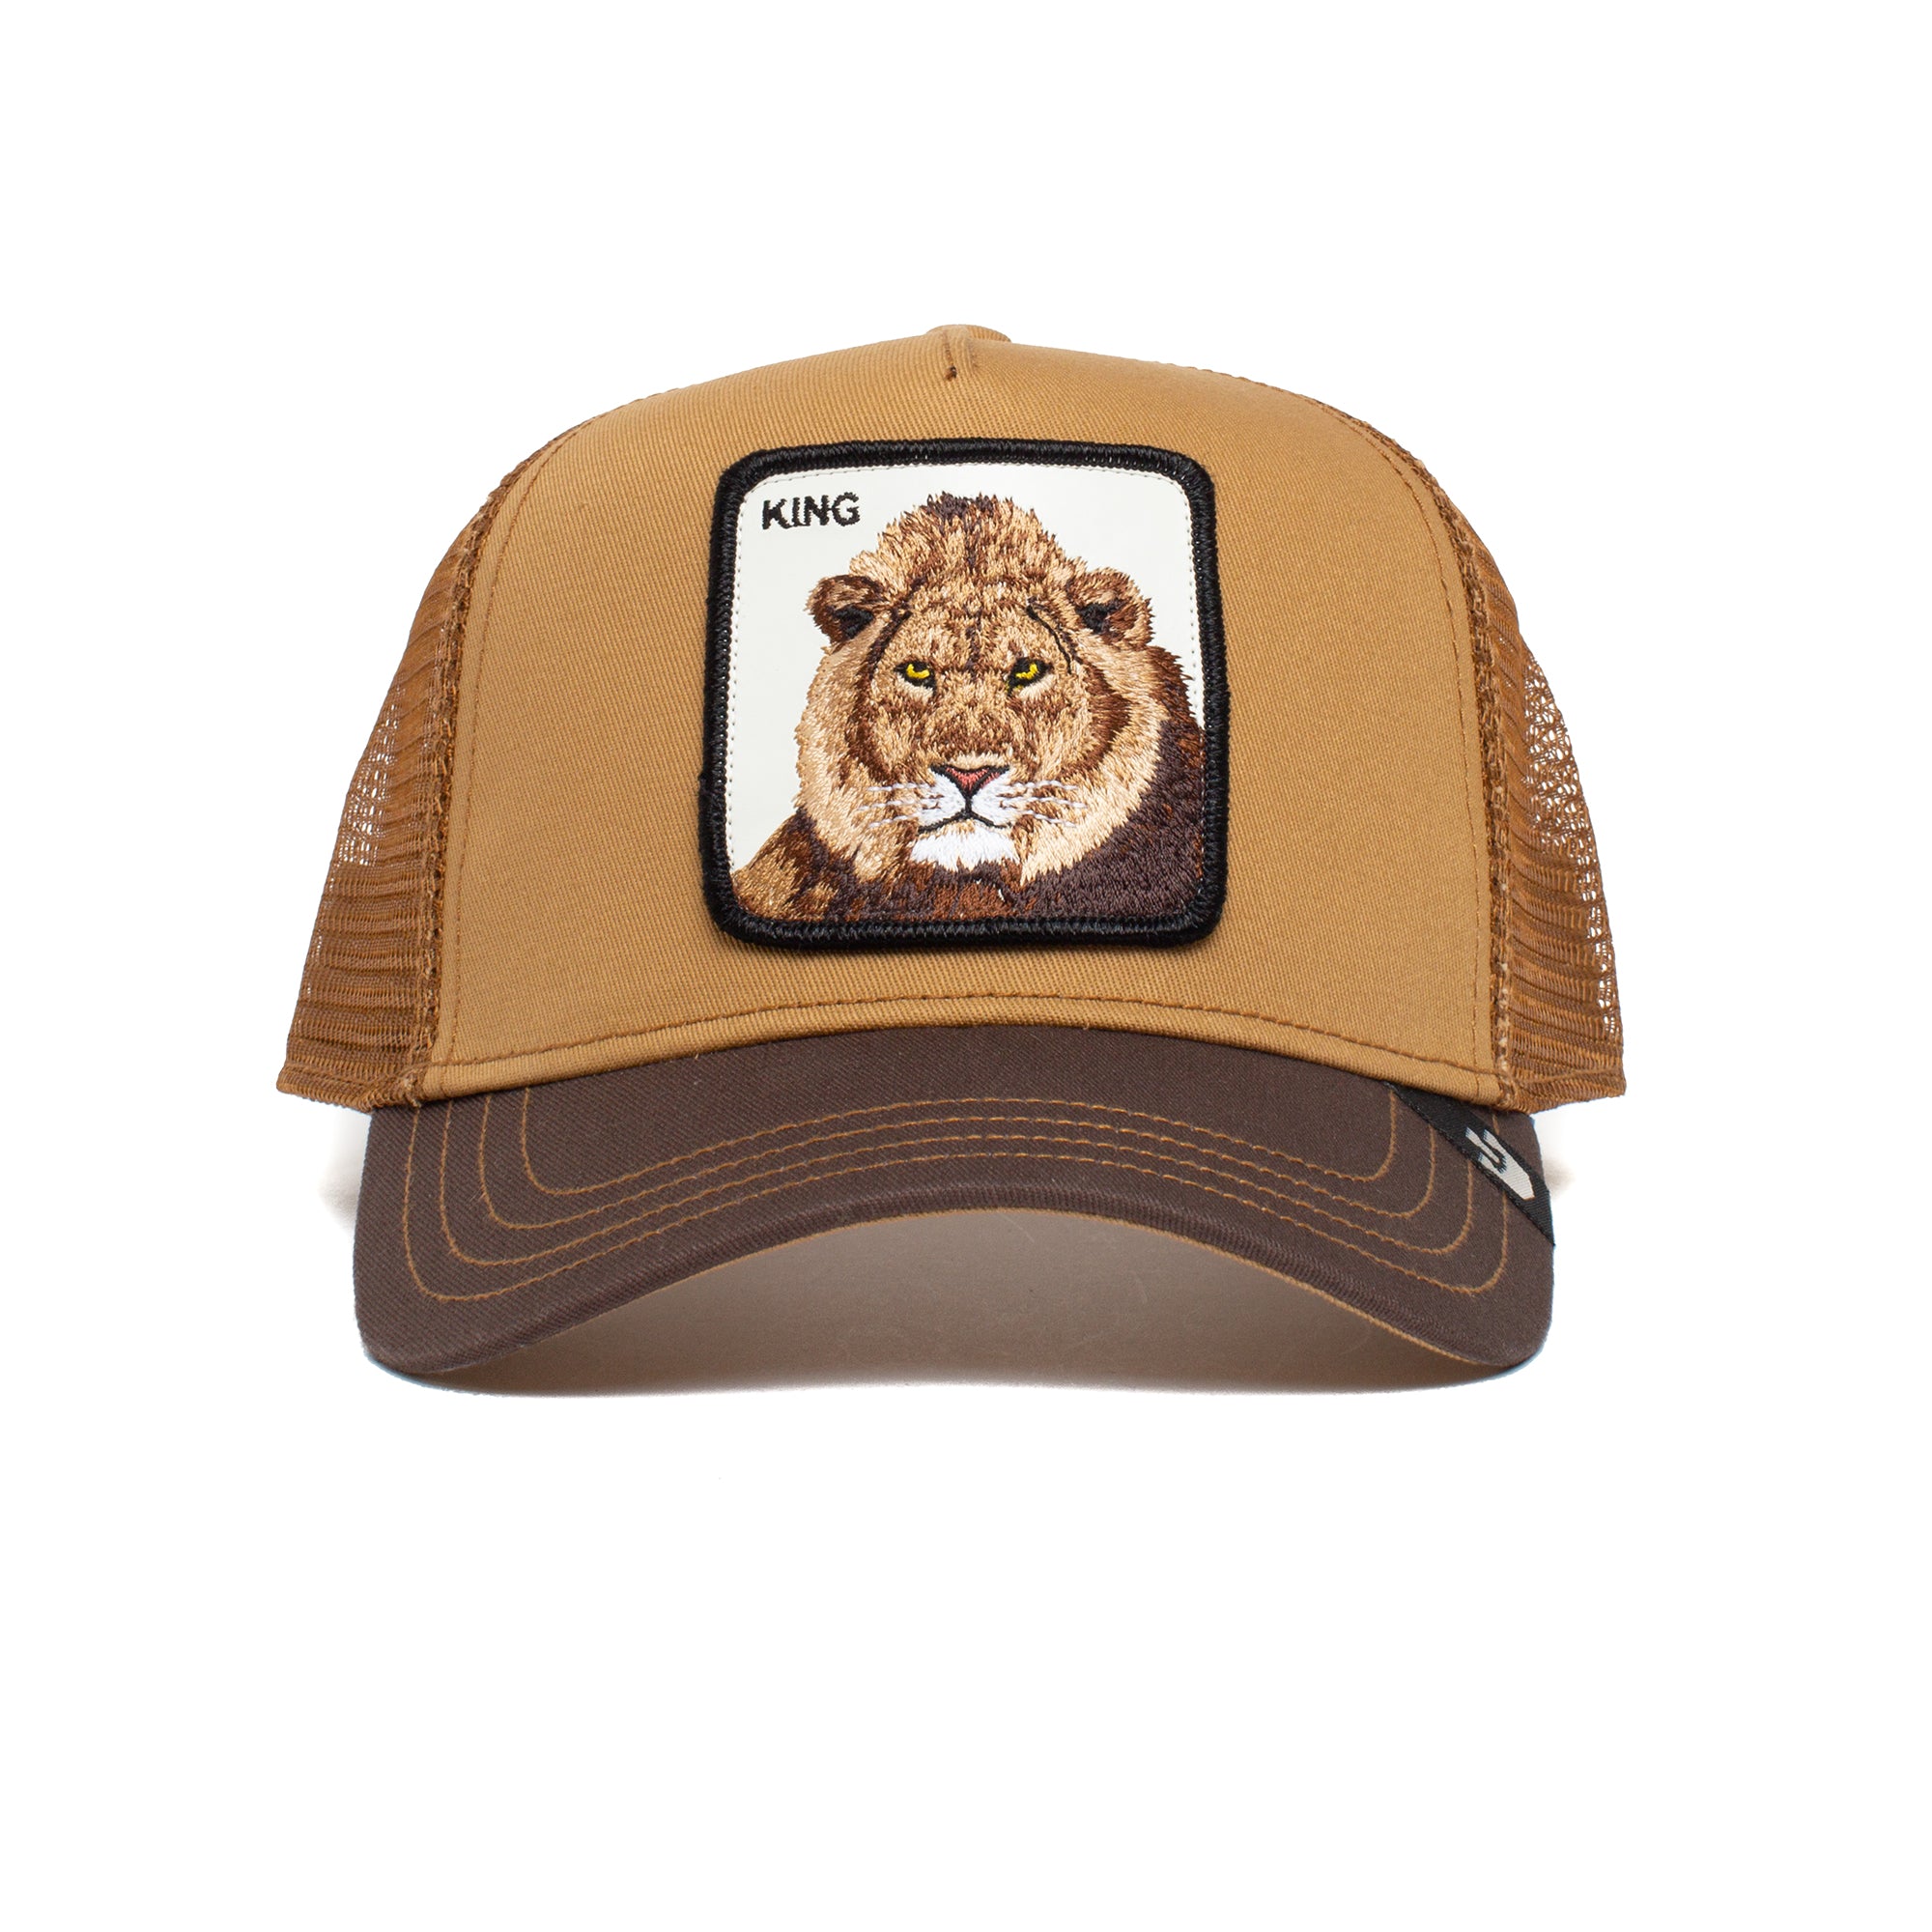 Goorin Bros The King Lion - Trucker Cap - Brown - Headz Up 